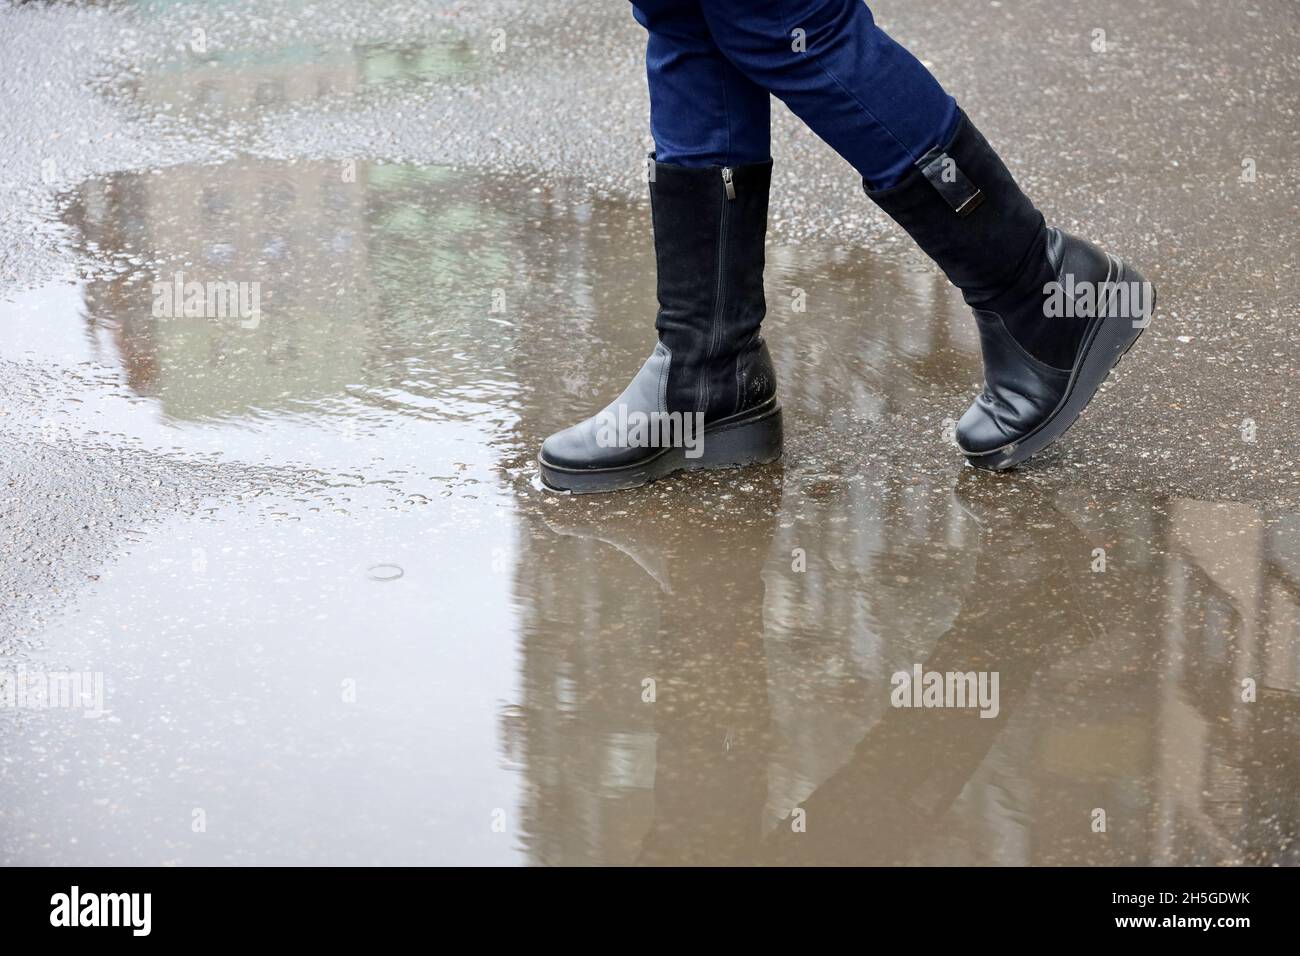 Regen in der Stadt, weibliche Beine in Stiefeln auf einer Straße mit Pfützen. Wohngebäude spiegeln sich im Wasser, Frau geht im Herbstwetter Stockfoto